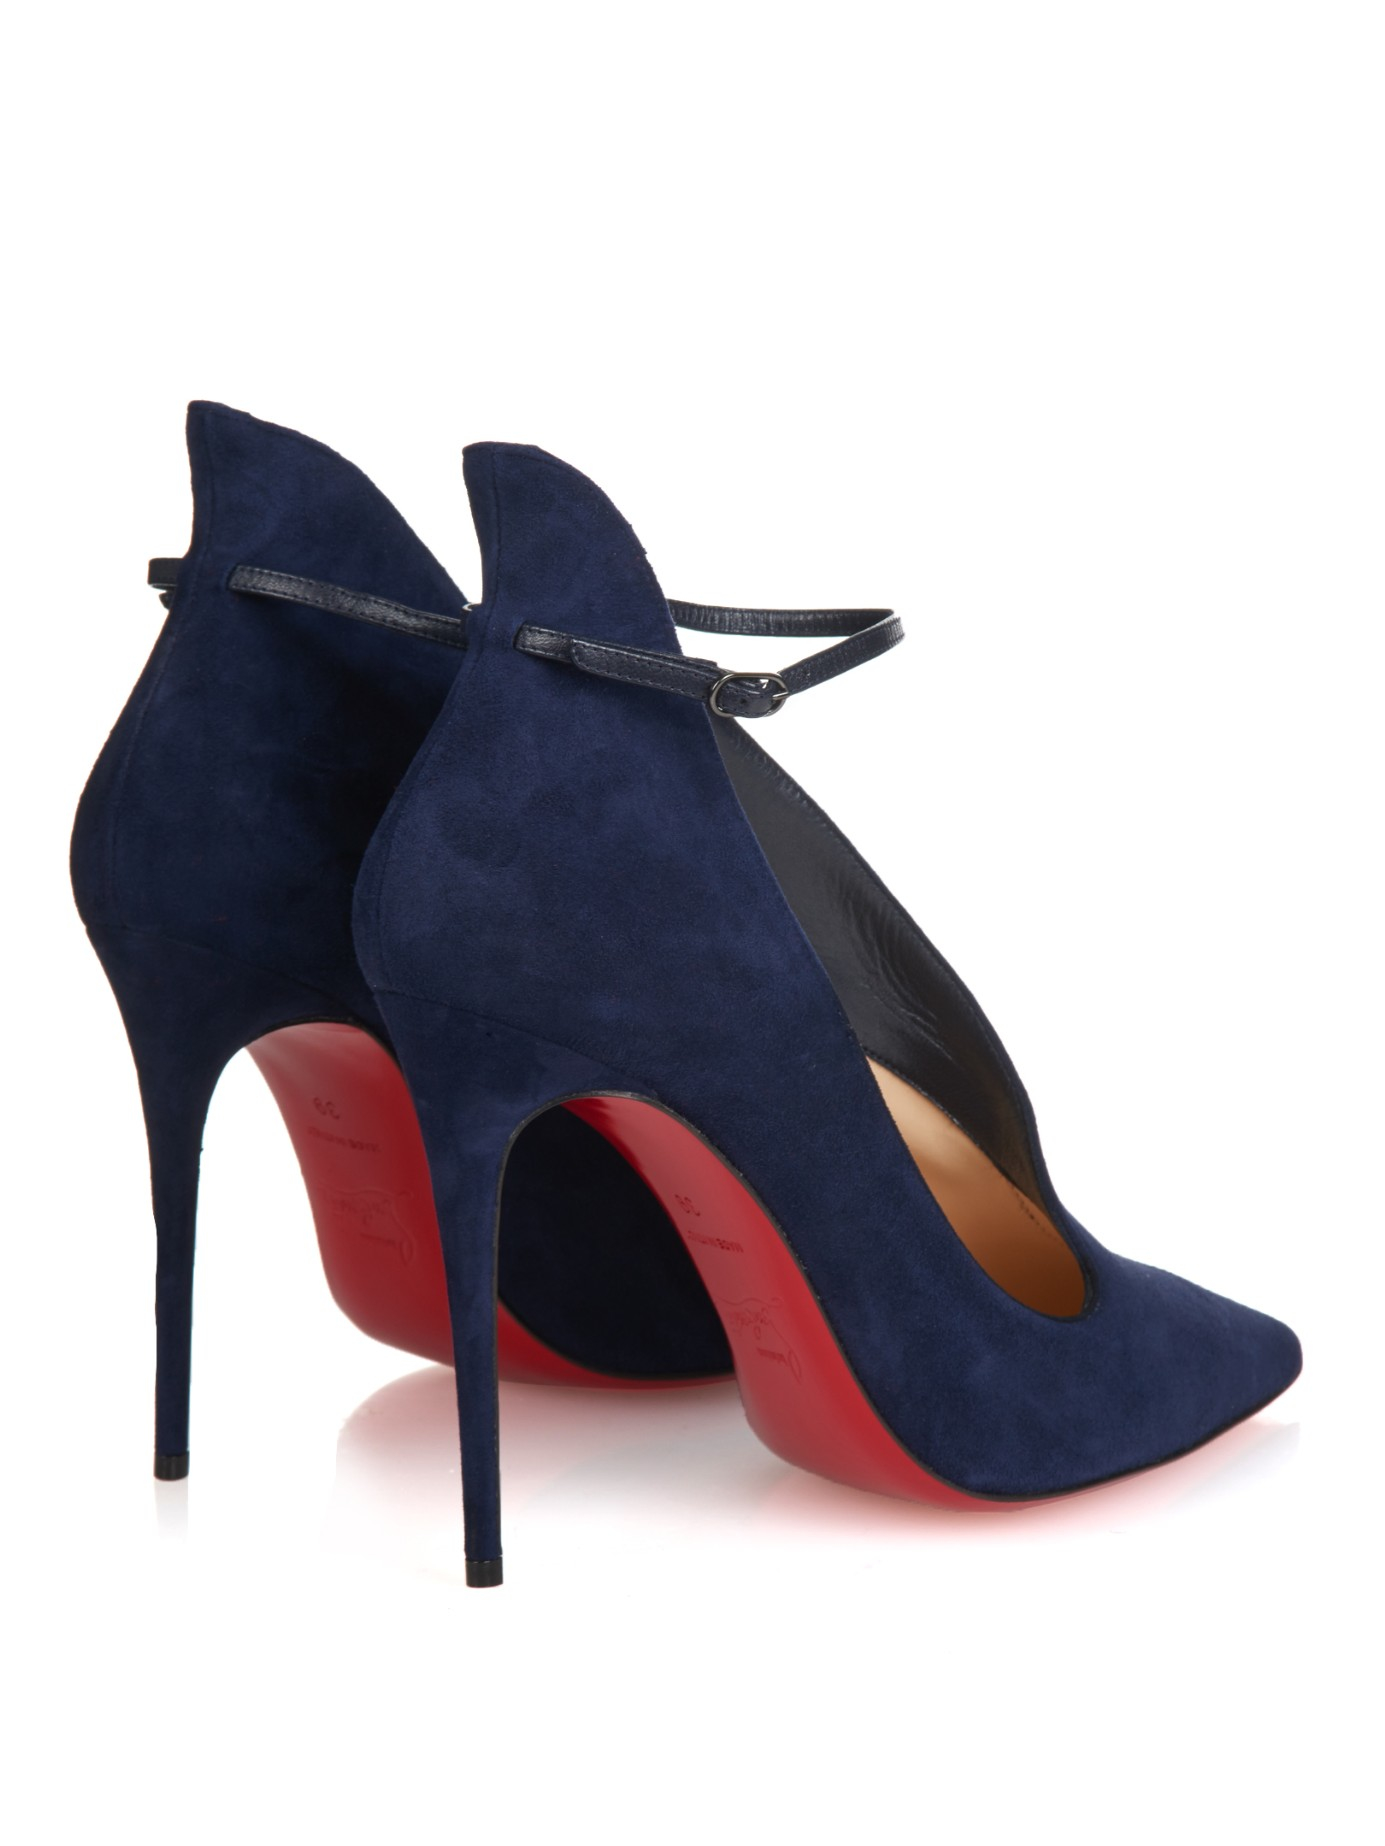 louboutin blue heels